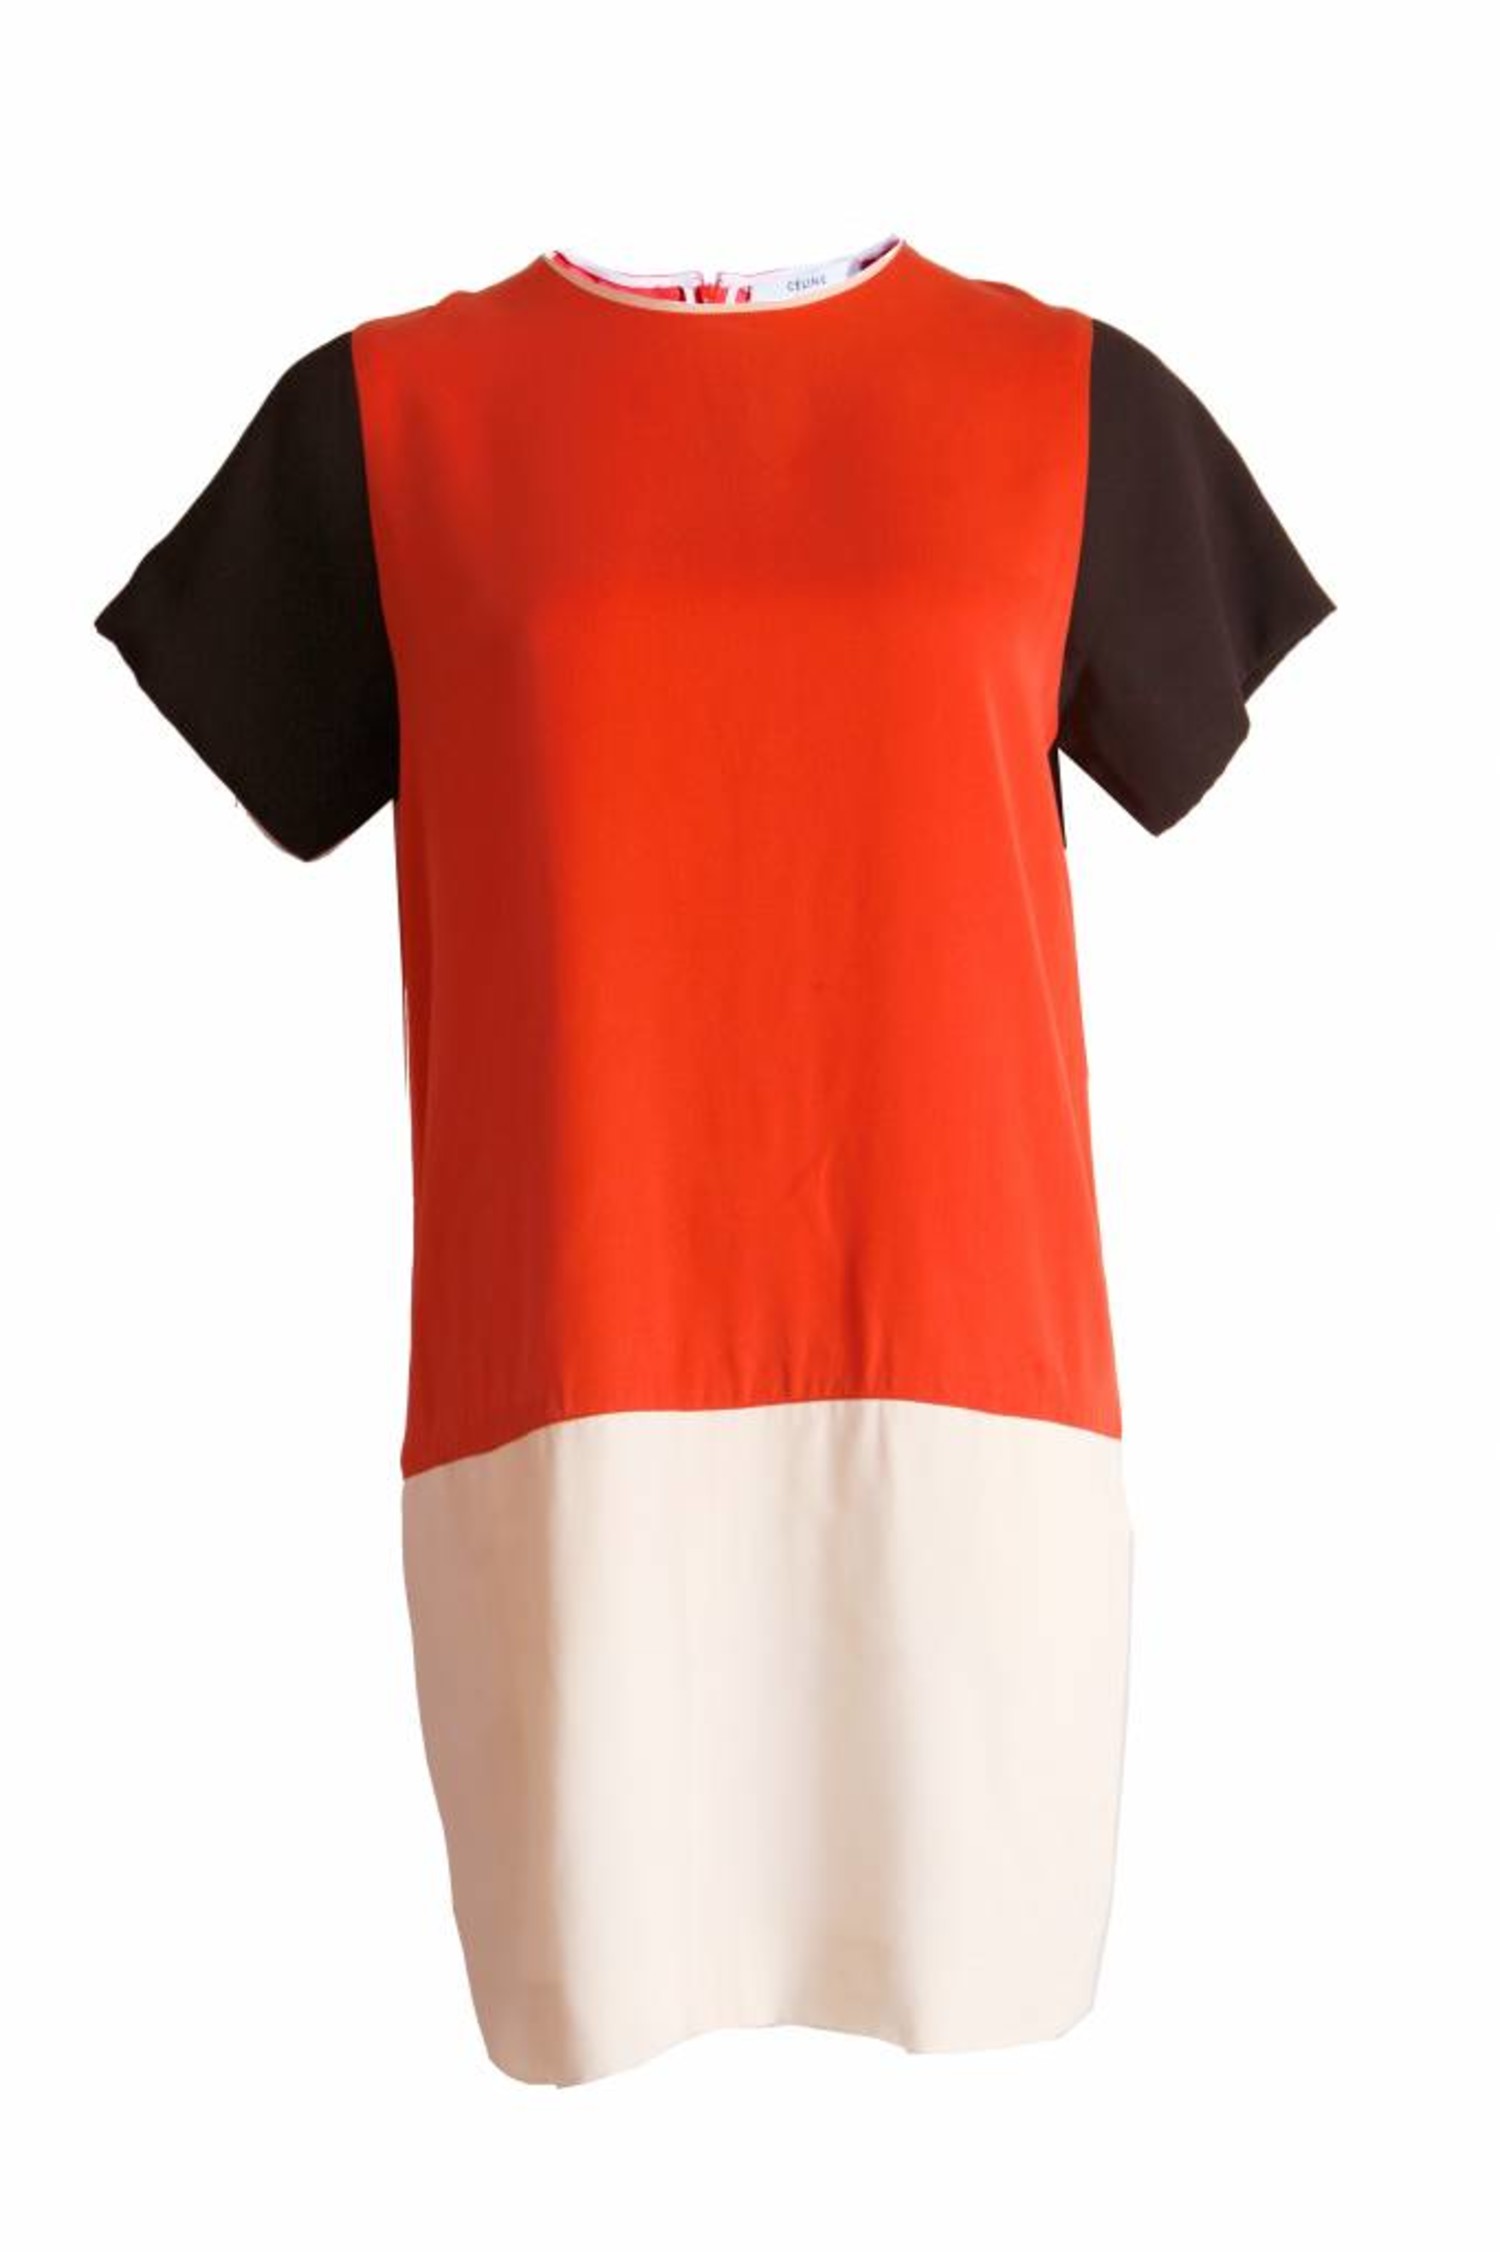 Celine Celine, silk dress in orange/black/white in size S. - Unique ...